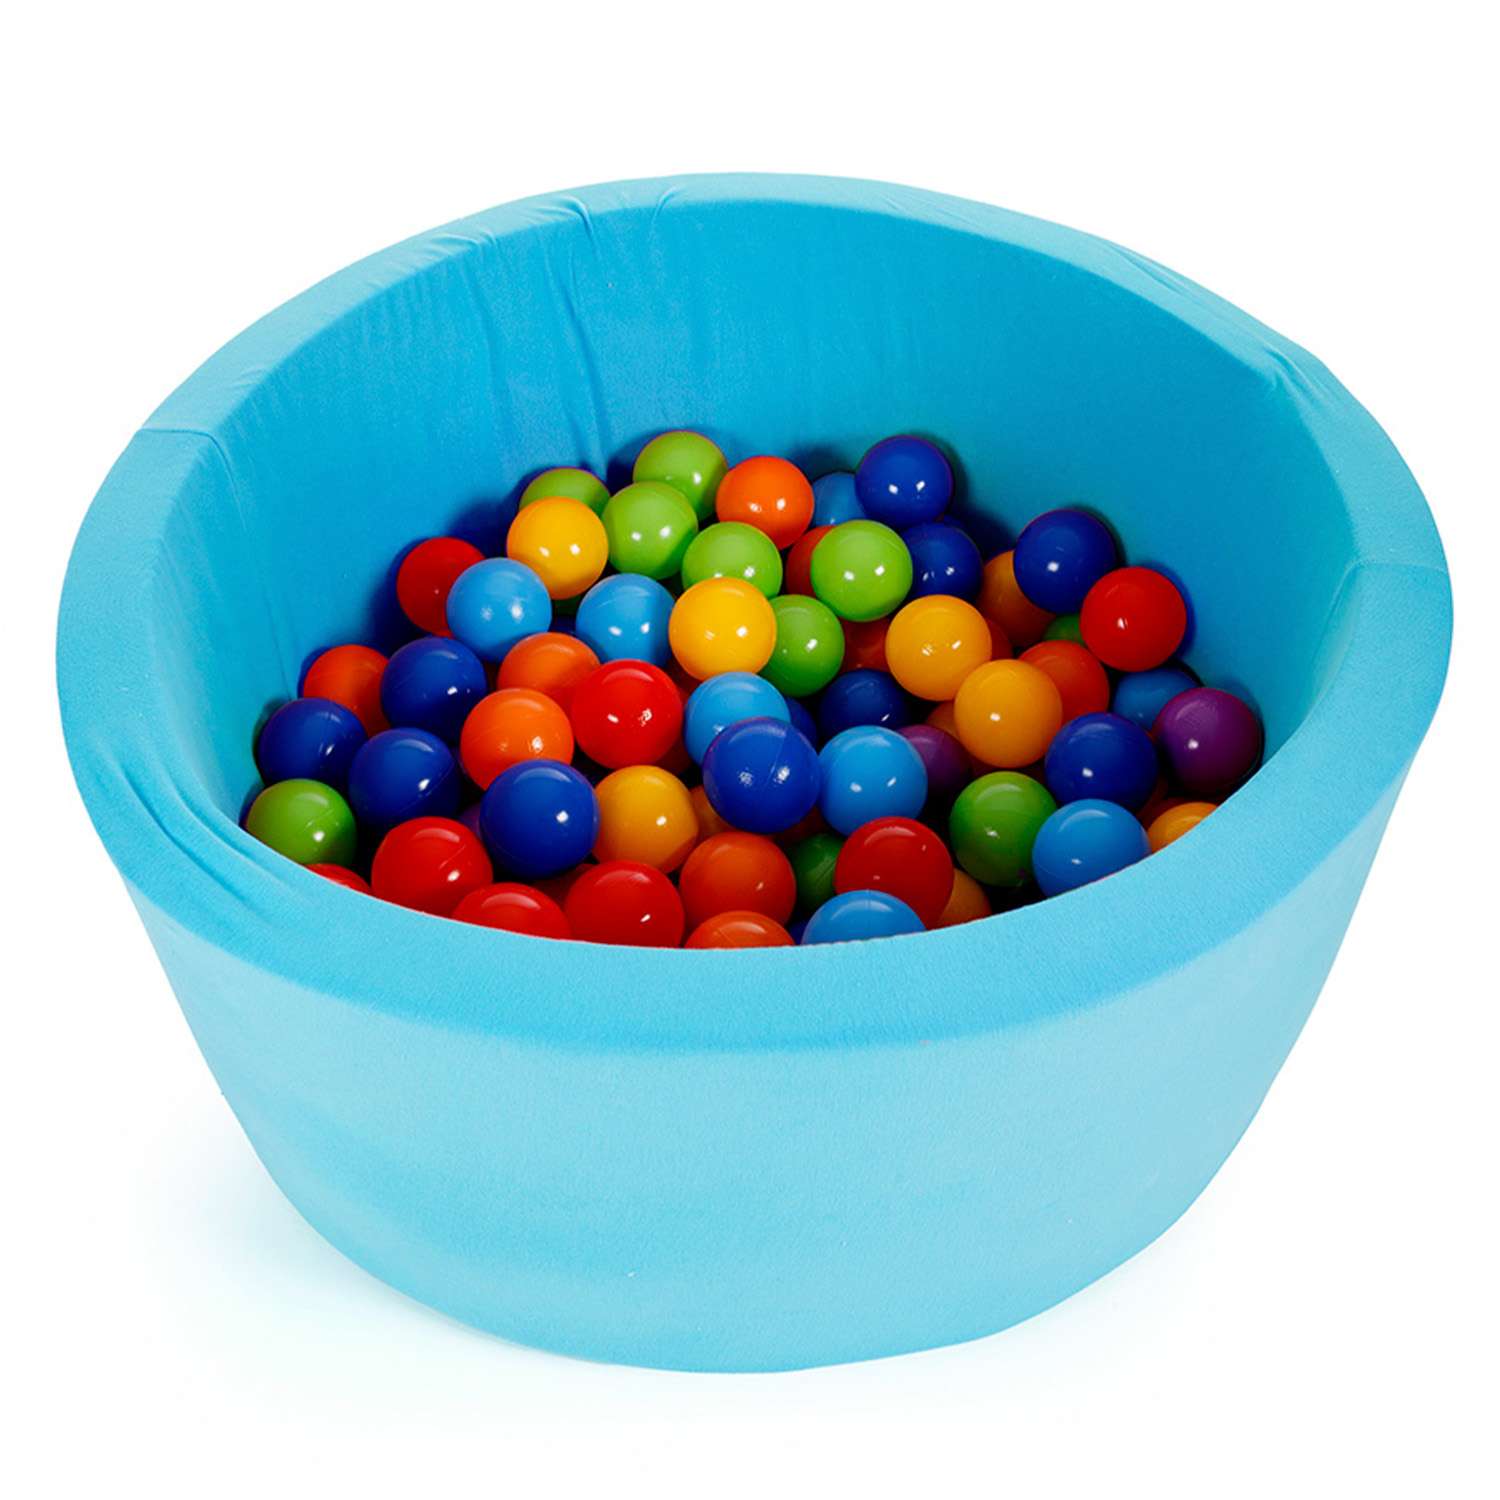 Сухой бассейн Тутси Бассейн игровой с комплектом шаров поролон ярко-голубой 160 шт d8 см 85х40 см - фото 2